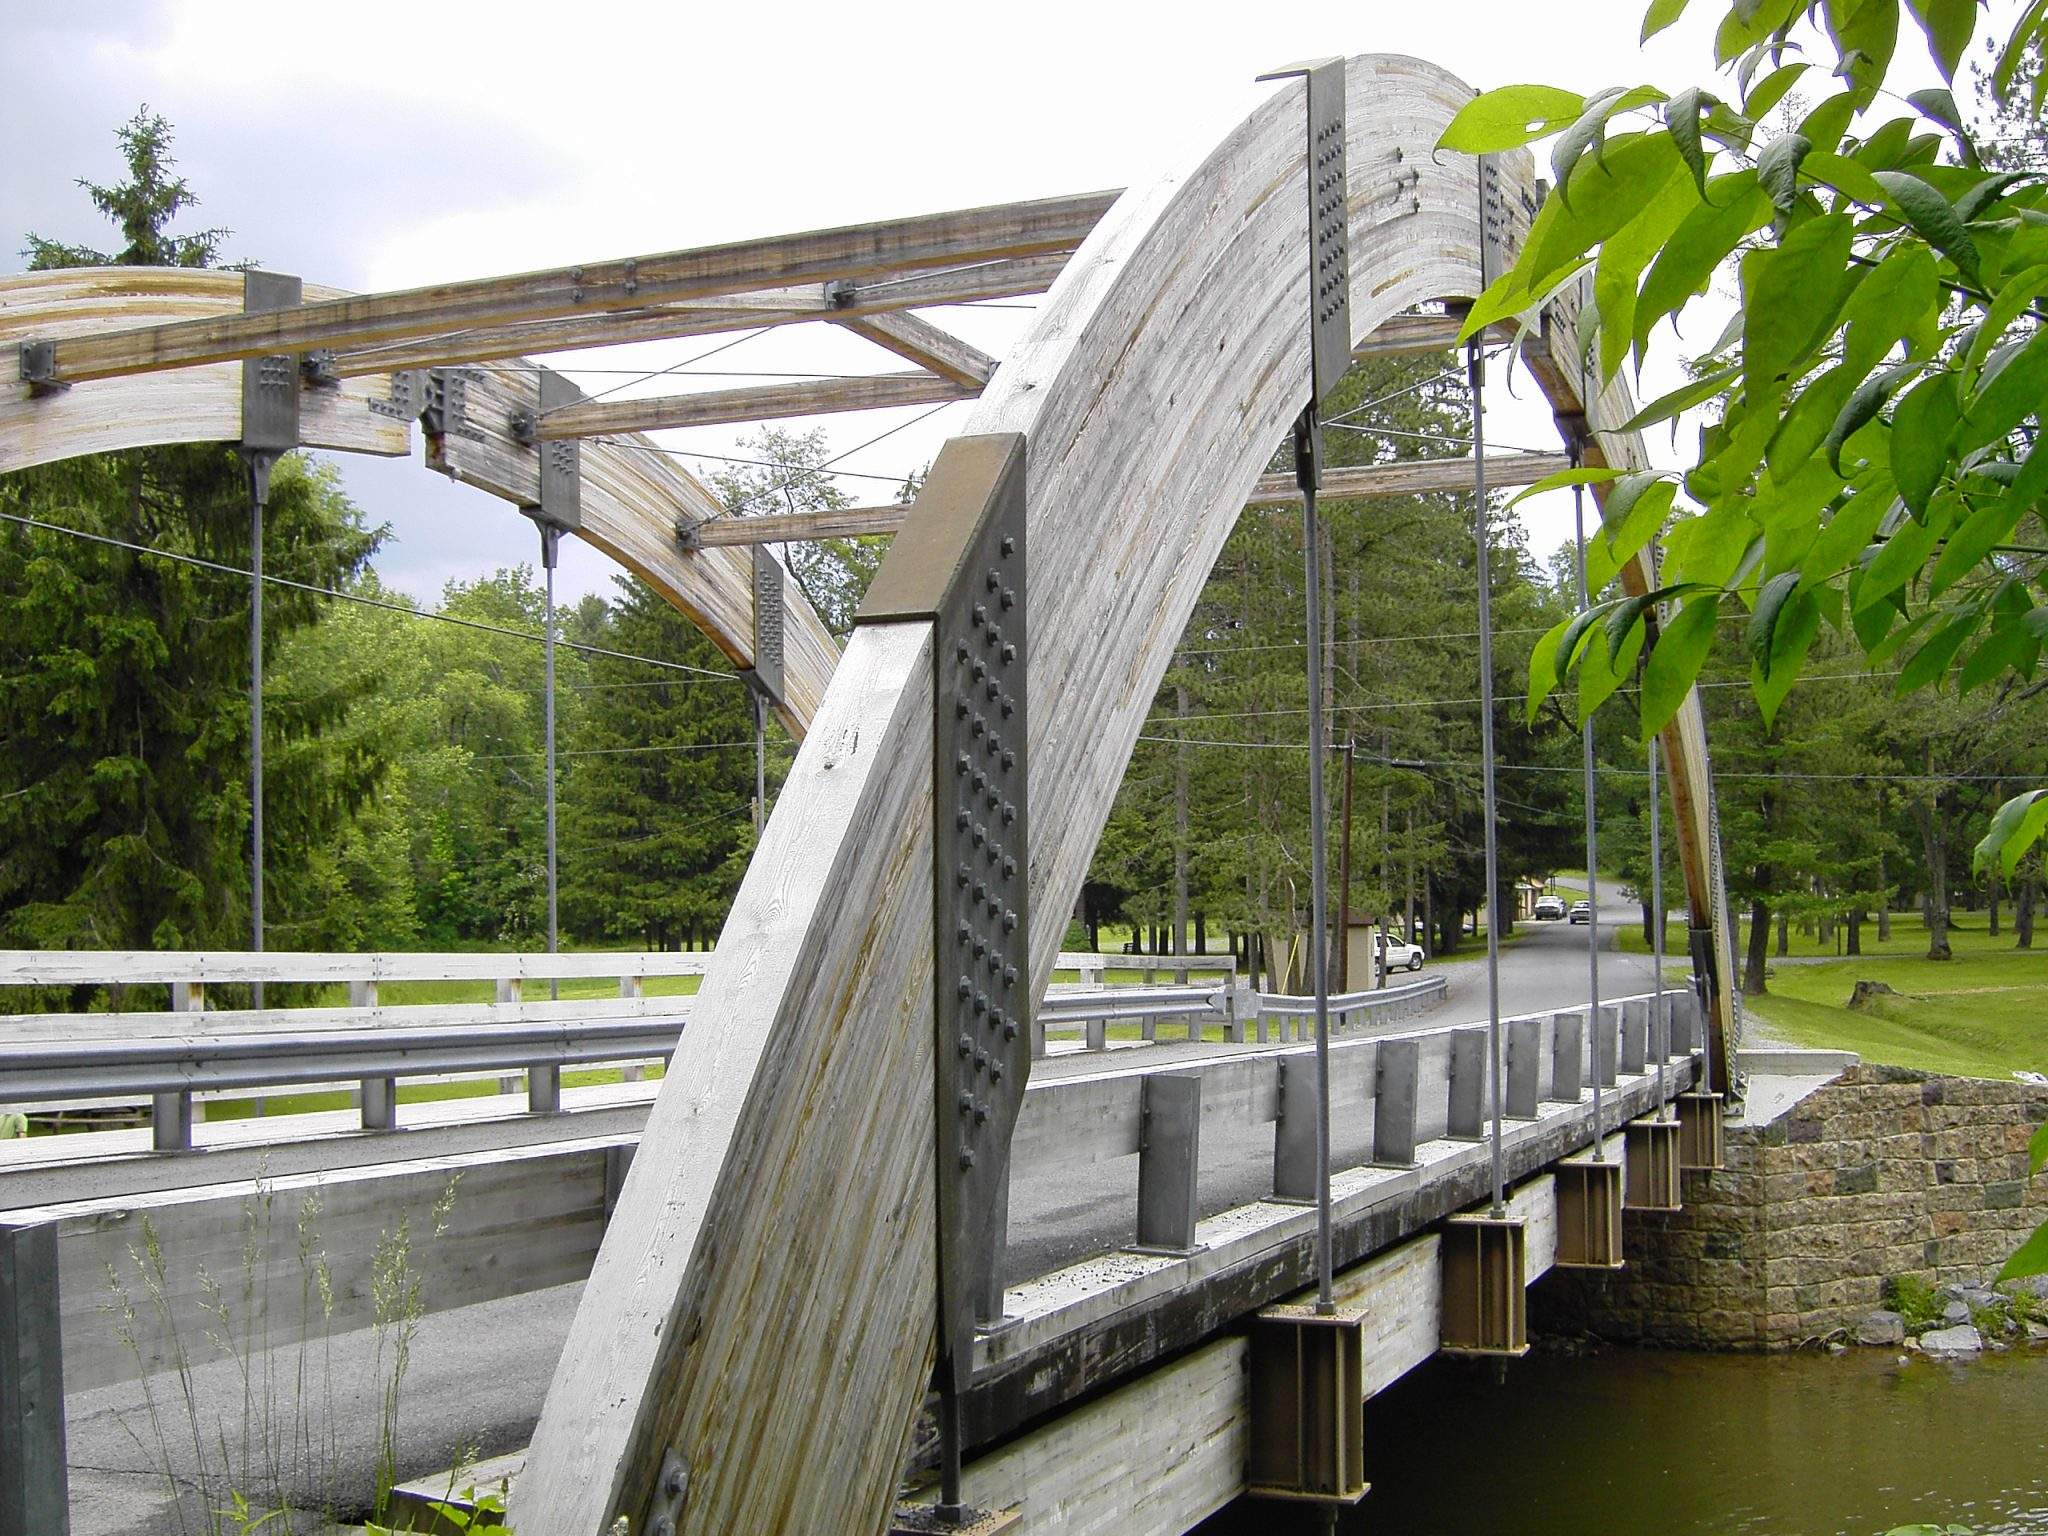 James Creek, PA Pedestrian and Public Bridges (2)